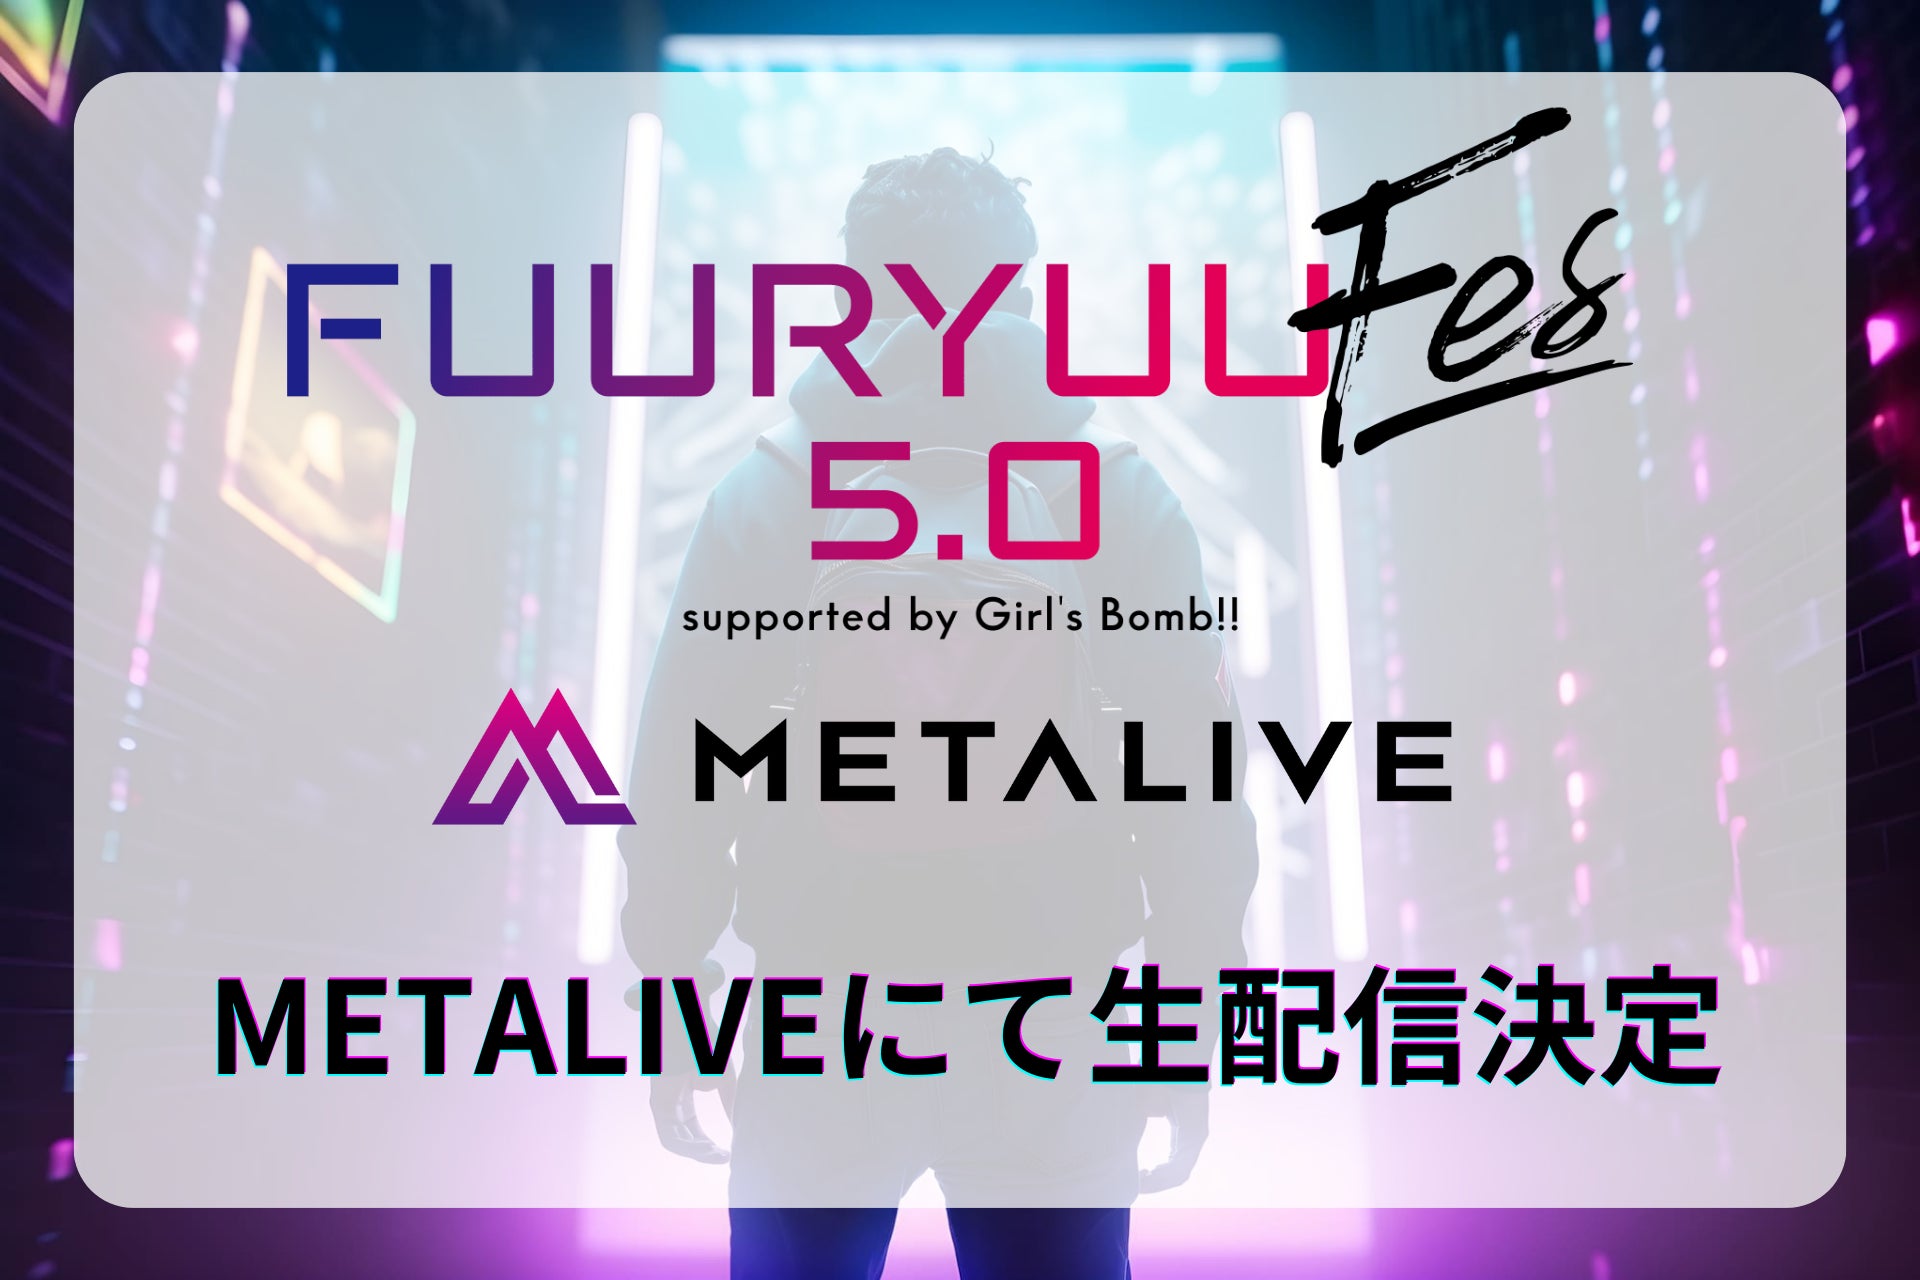 METALIVE、アイドルが集結する次世代型ステージ「FUURYUUFES 5.0 supported by Girl’s Bomb!!」にメディアパートナーとして参加！ライブパフォーマンスを生配信のサブ画像1